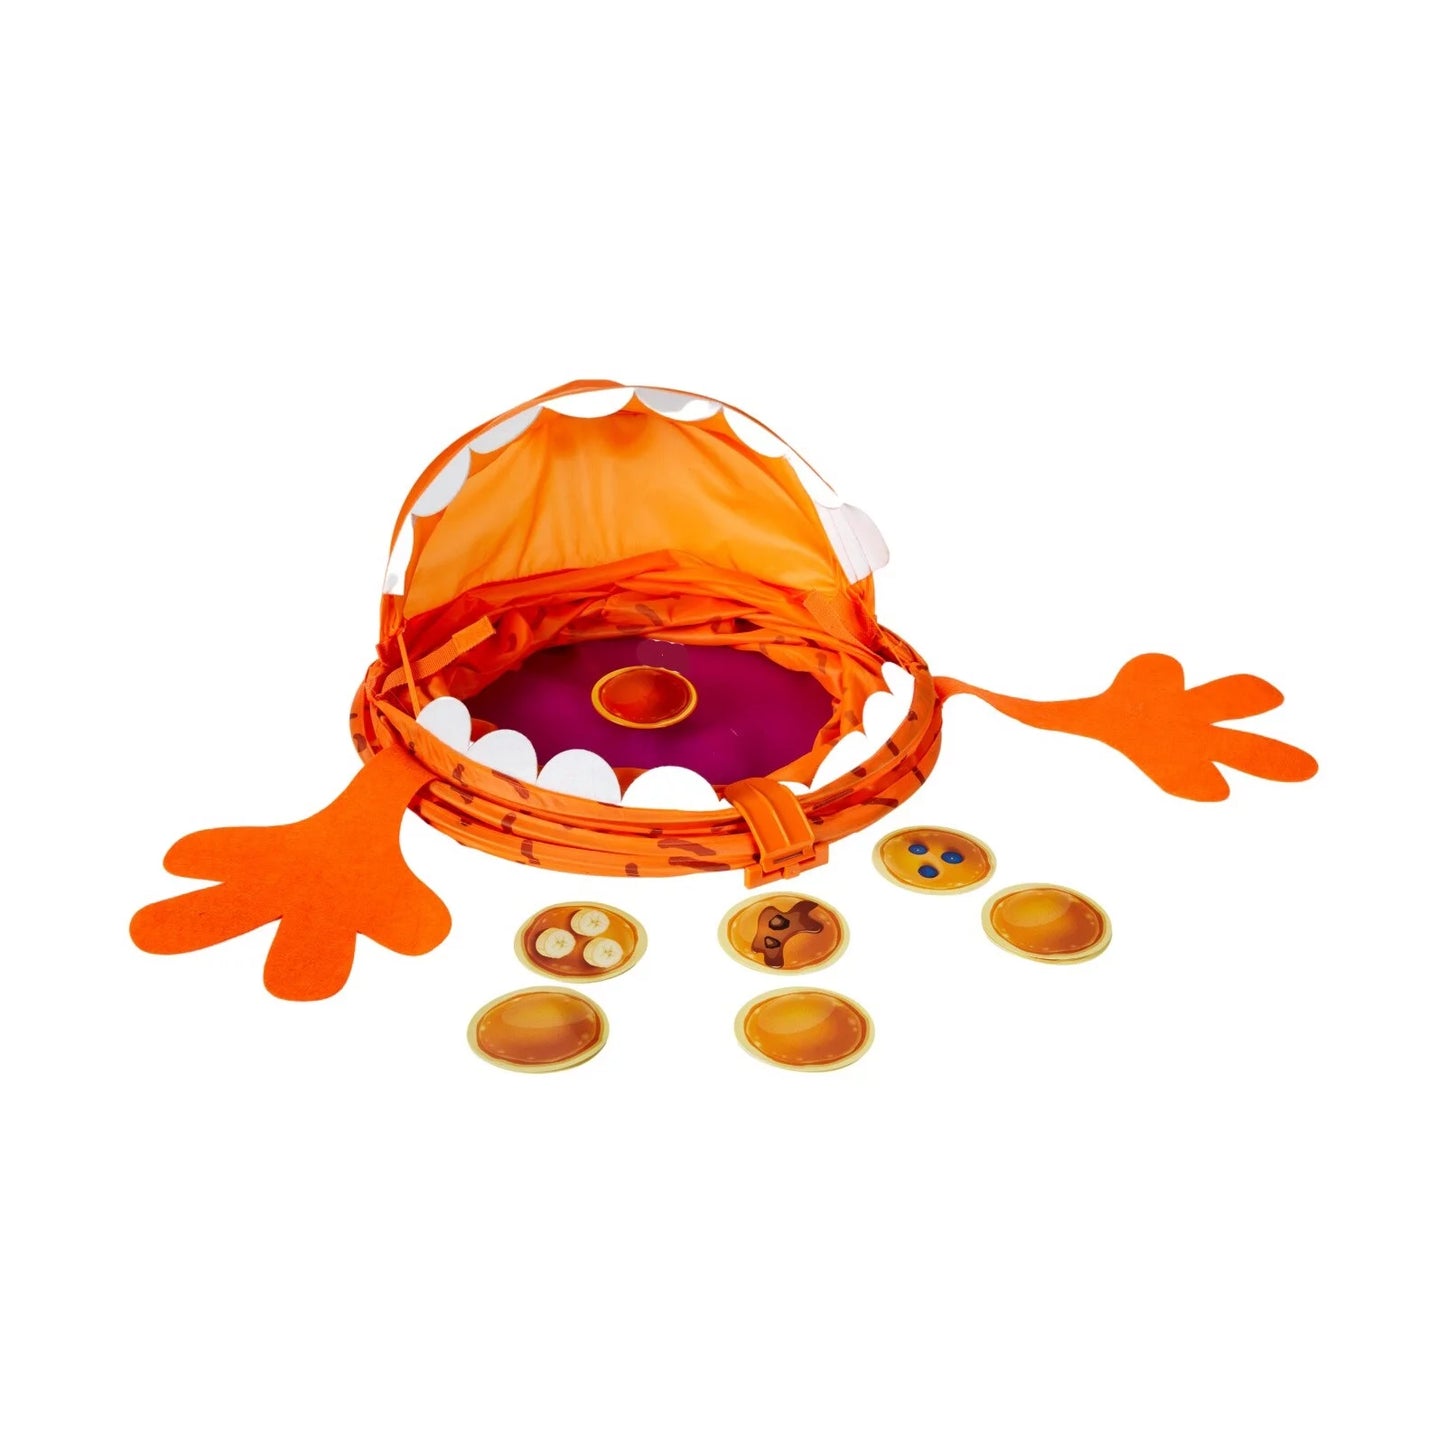 Giant POP-UP Pancake Monster Hilarious Interactive Tactile Game 巨型煎餅怪獸搞笑互動觸覺遊戲